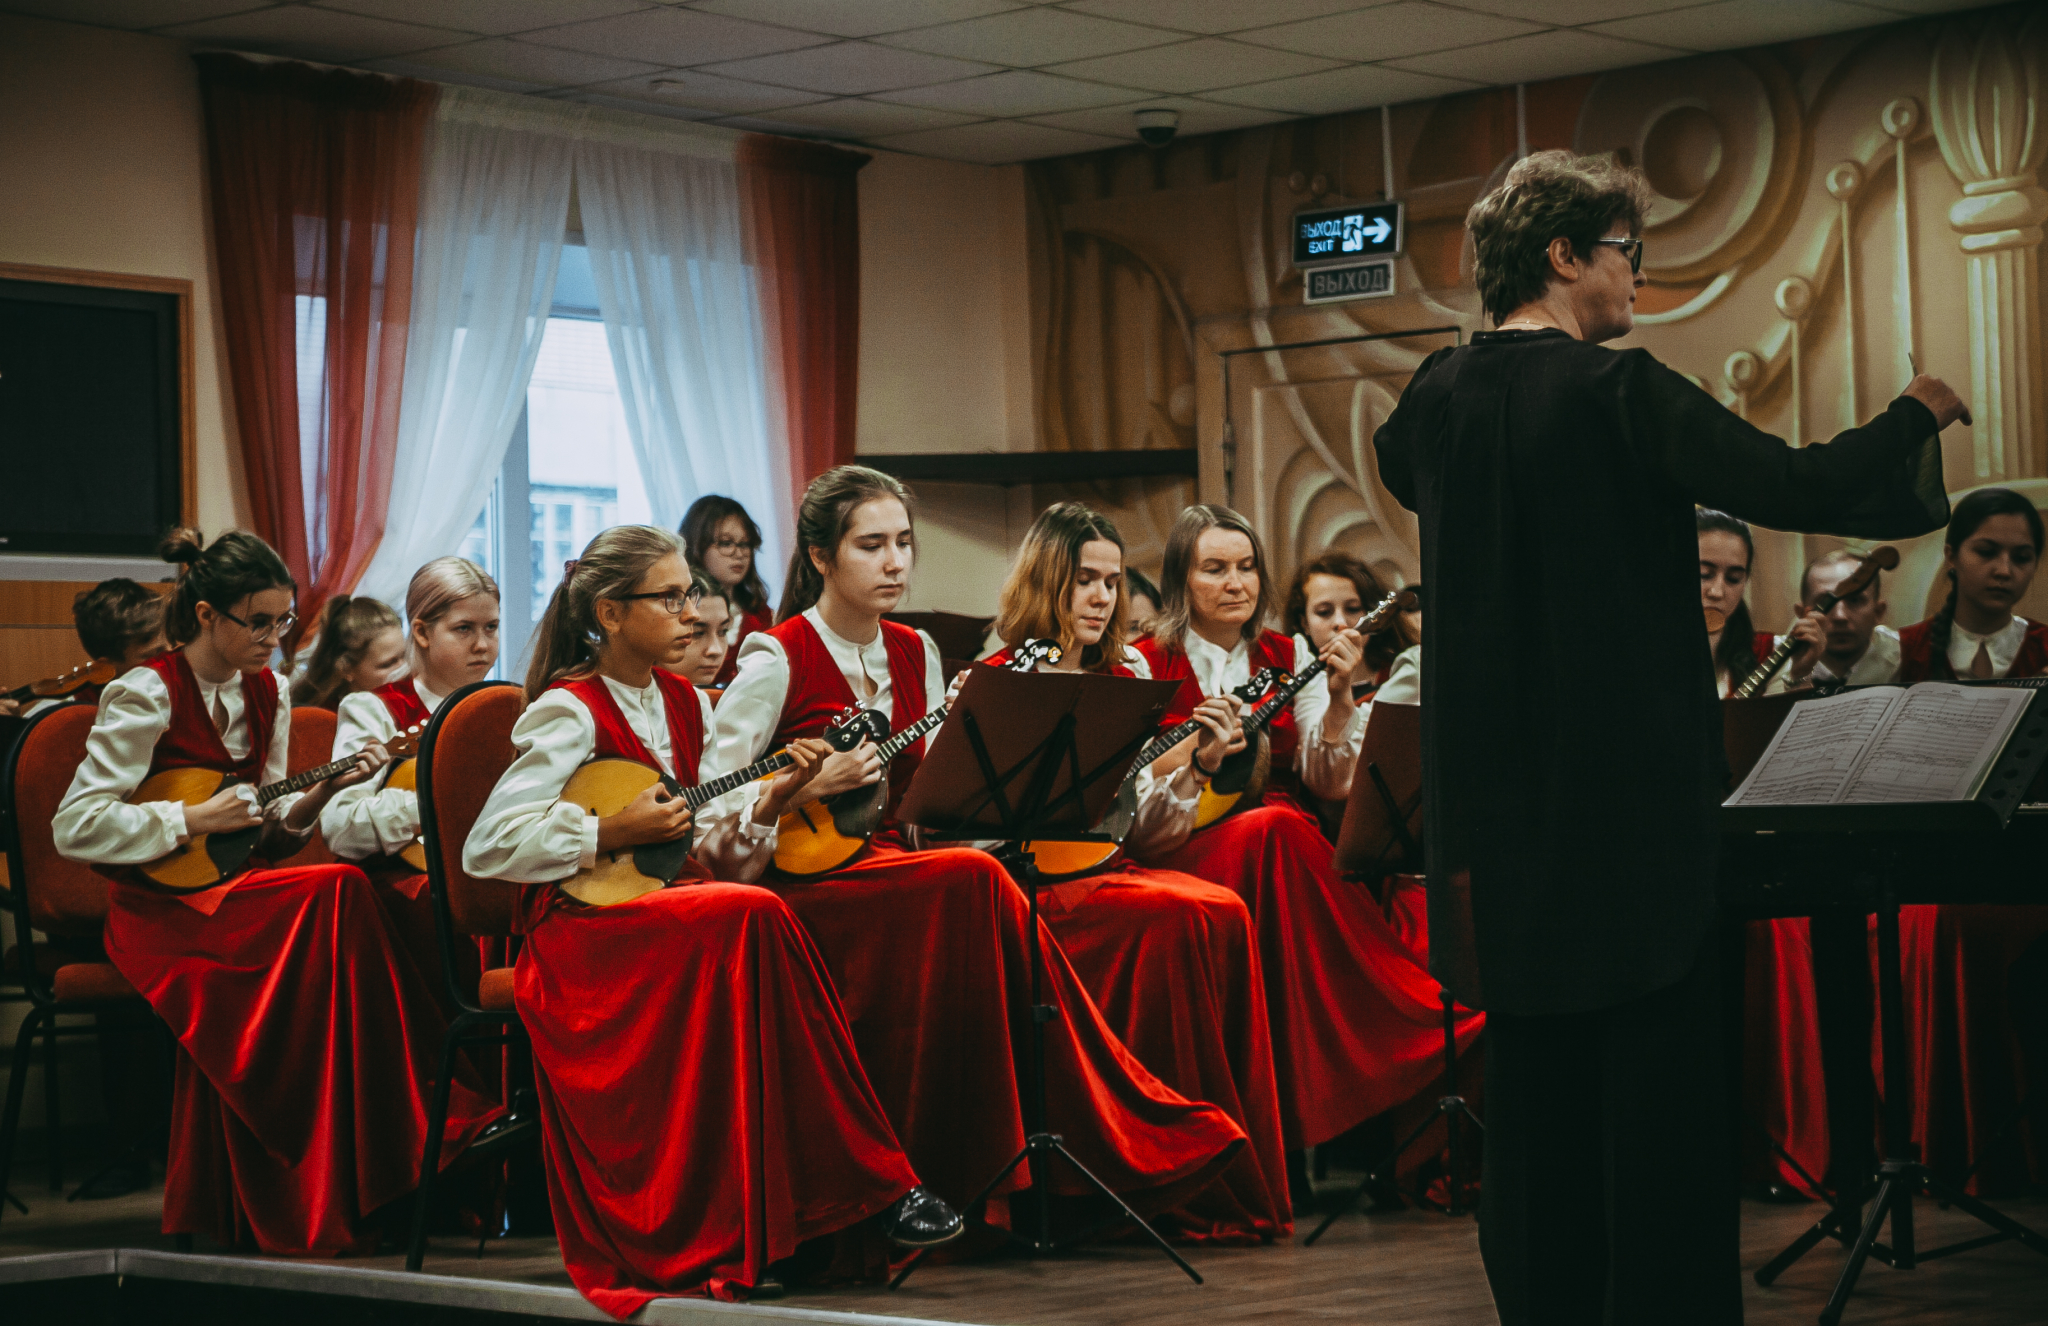 Владимирская детская школа искусств №2 стала лучшей и дала большой концерт (Фото)